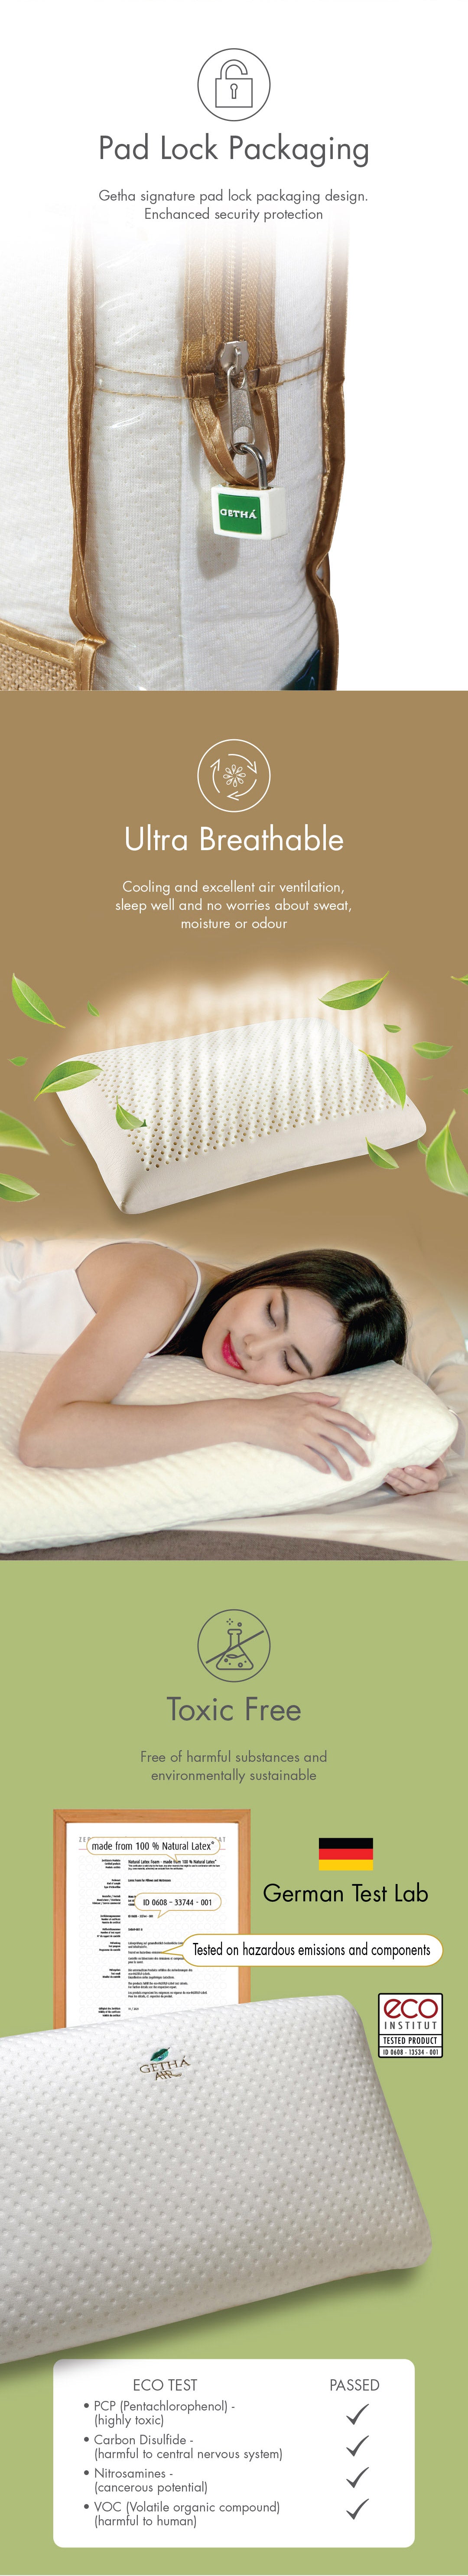 air-latex-pillow-product-description